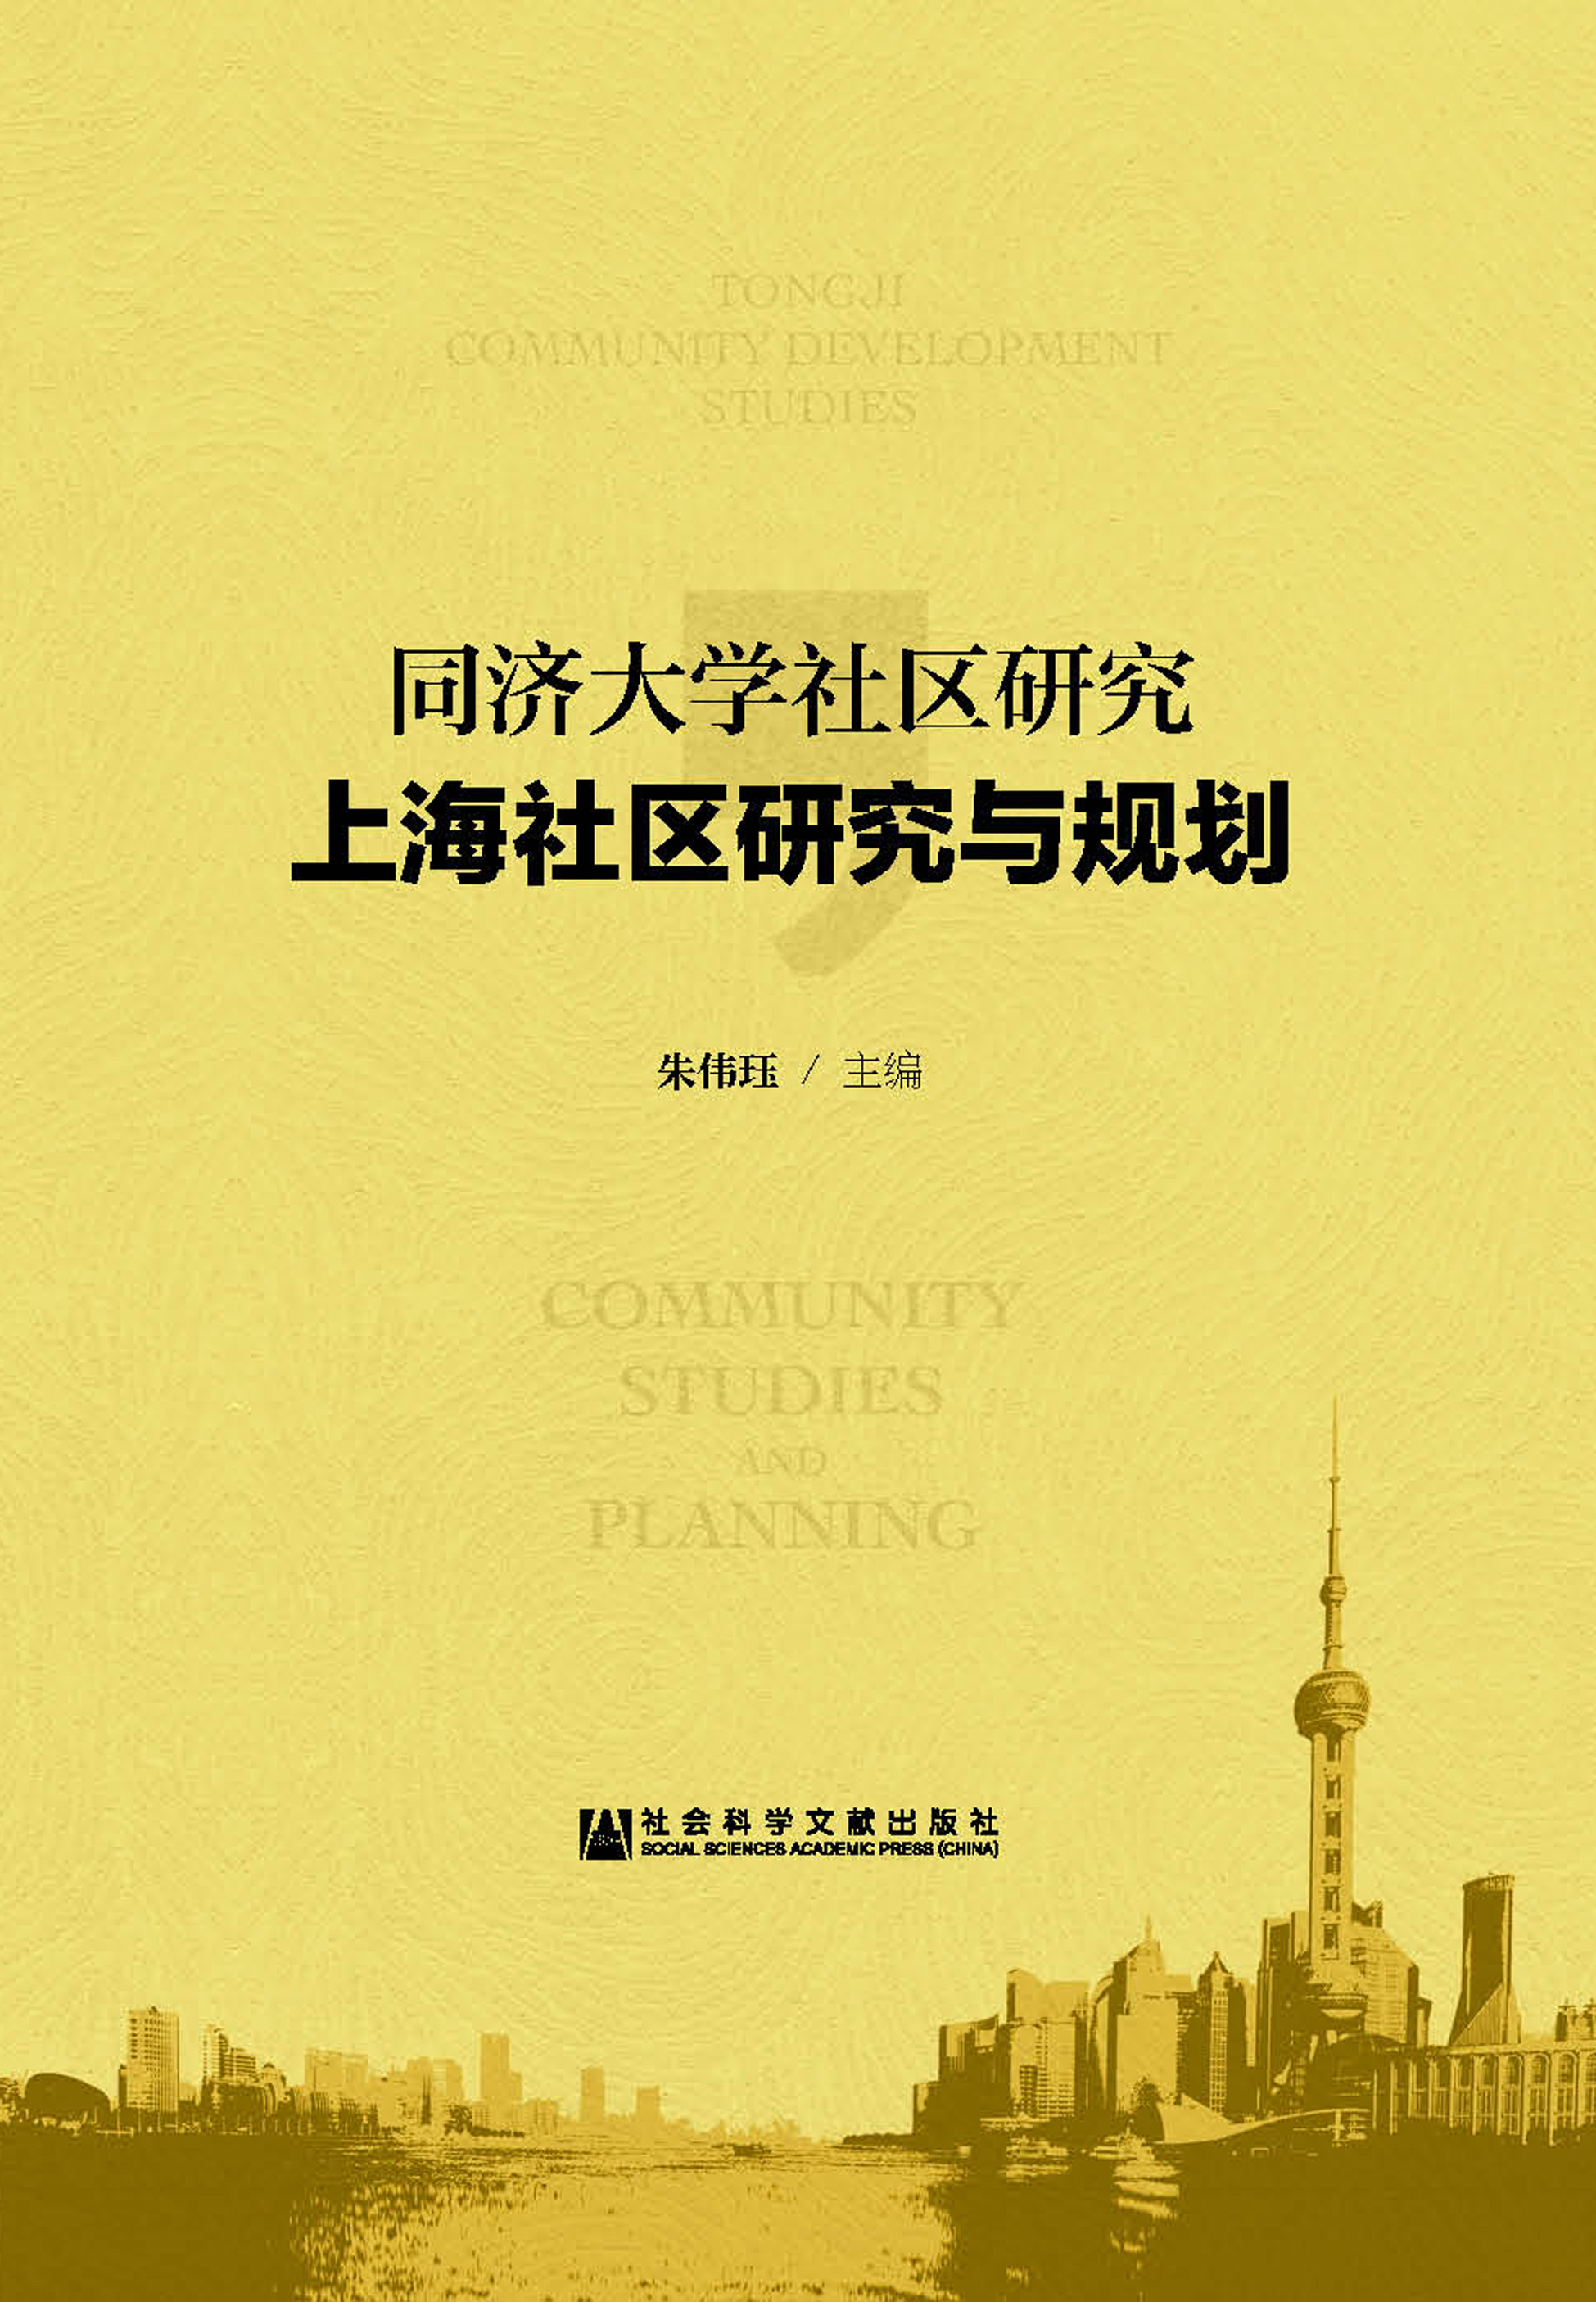 同济大学社区研究·上海社区研究与规划